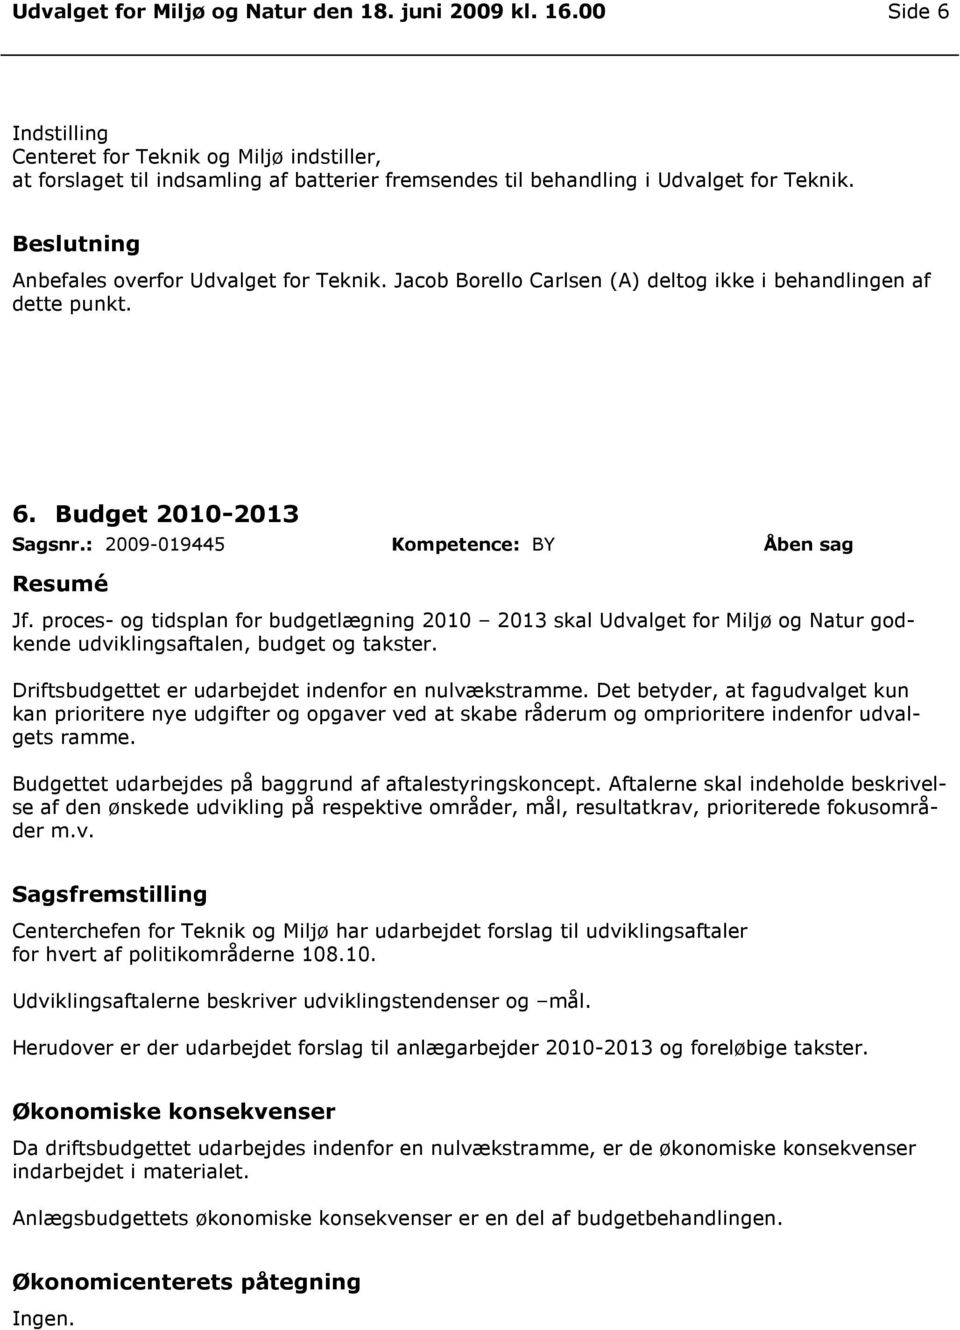 proces- og tidsplan for budgetlægning 2010 2013 skal Udvalget for Miljø og Natur godkende udviklingsaftalen, budget og takster. Driftsbudgettet er udarbejdet indenfor en nulvækstramme.